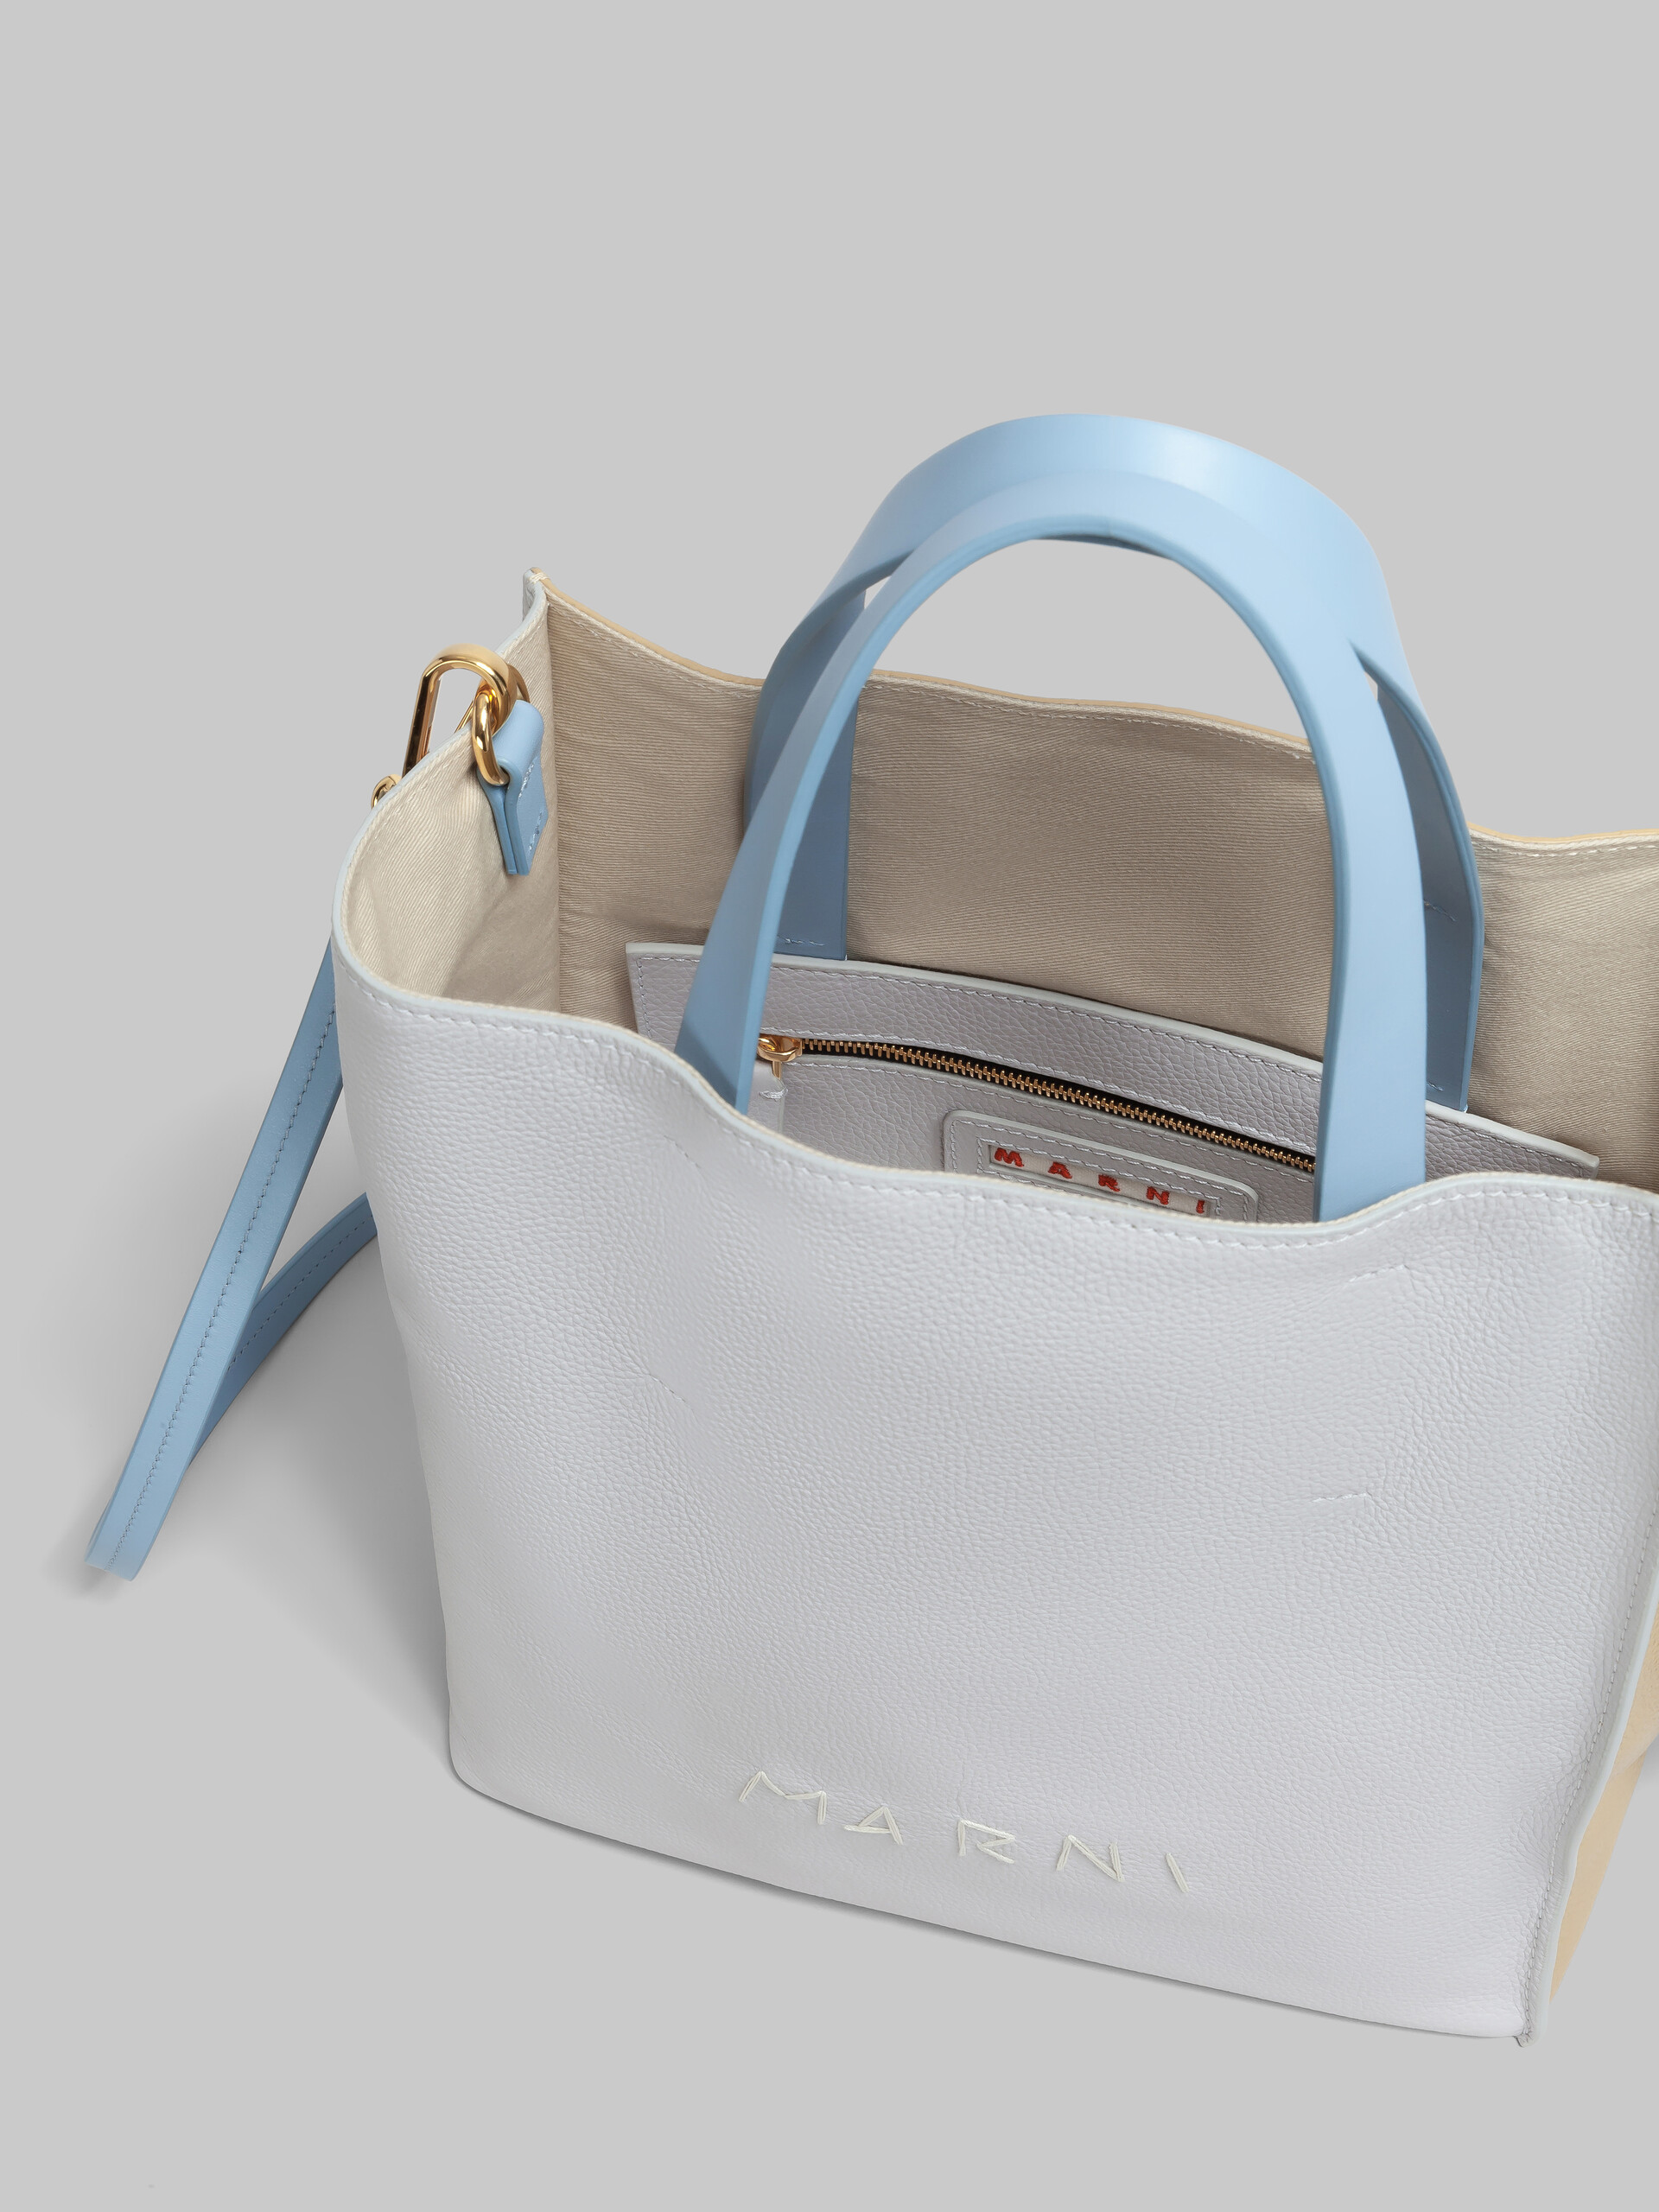 Museo Soft bag Mini in pelle bianca e marrone con impunture Marni - Borse shopping - Image 3